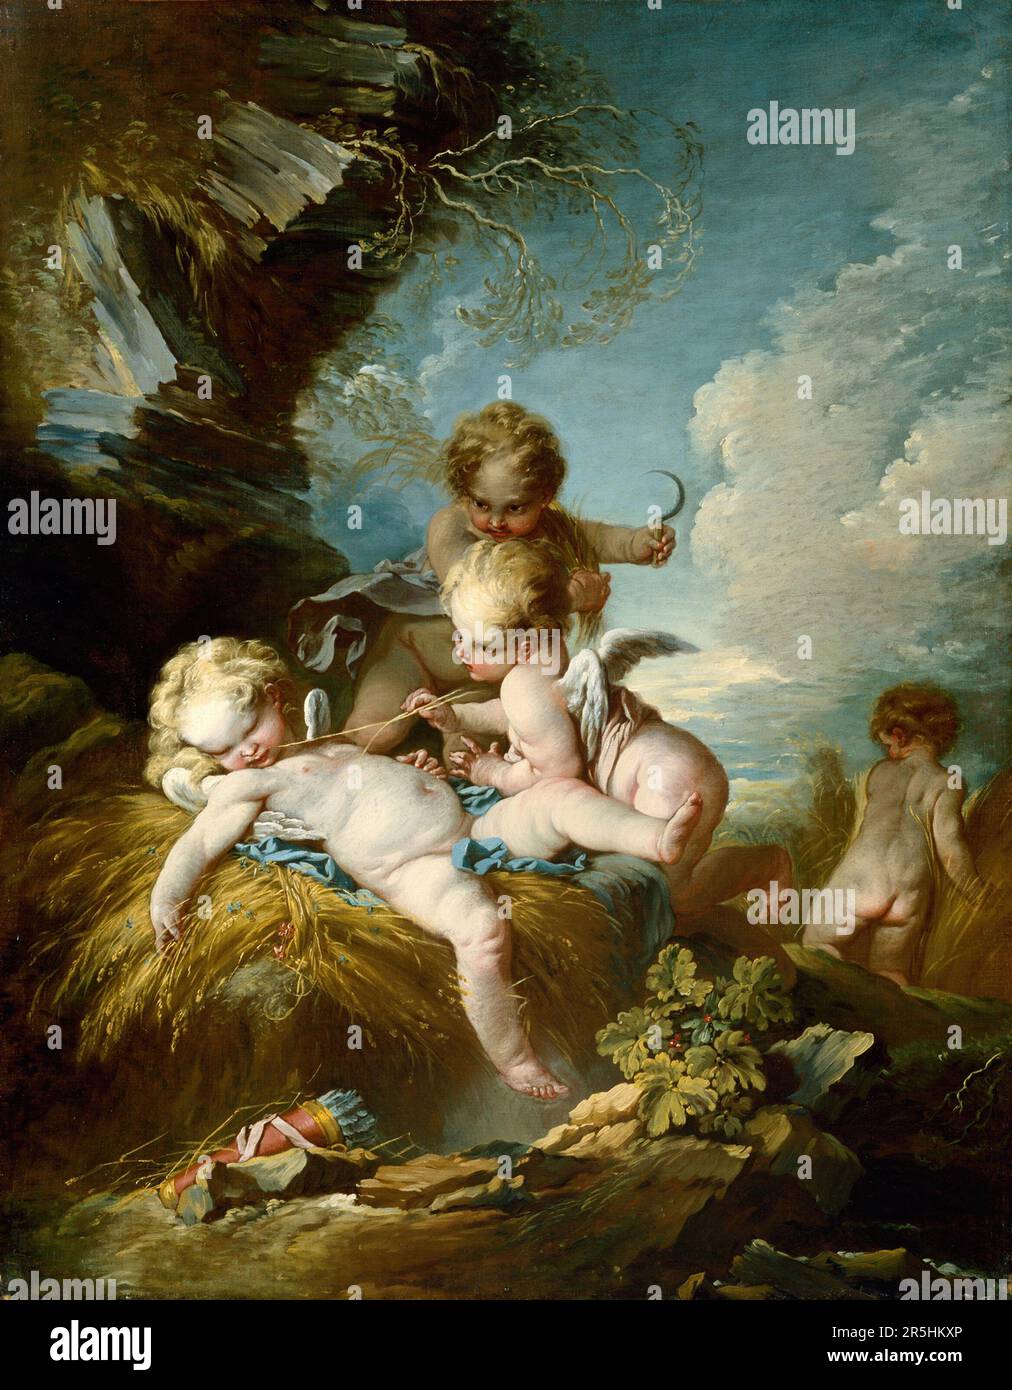 Die Cherub Harvesters, gemalt von Francois Boucher. Boucher war einer der berühmtesten Maler des 18. Jahrhunderts in Frankreich. Er malte klassische Themen im Barock- und Rokoko-Stil. Seine Schirmherrin war Madame de Pompadour, und sein Werk war so beliebt, dass er schließlich Premier Peintre du ROI (erster Maler des Königs) wurde, ein angesehener Gerichtsstand im Antiker-Regime. Stockfoto